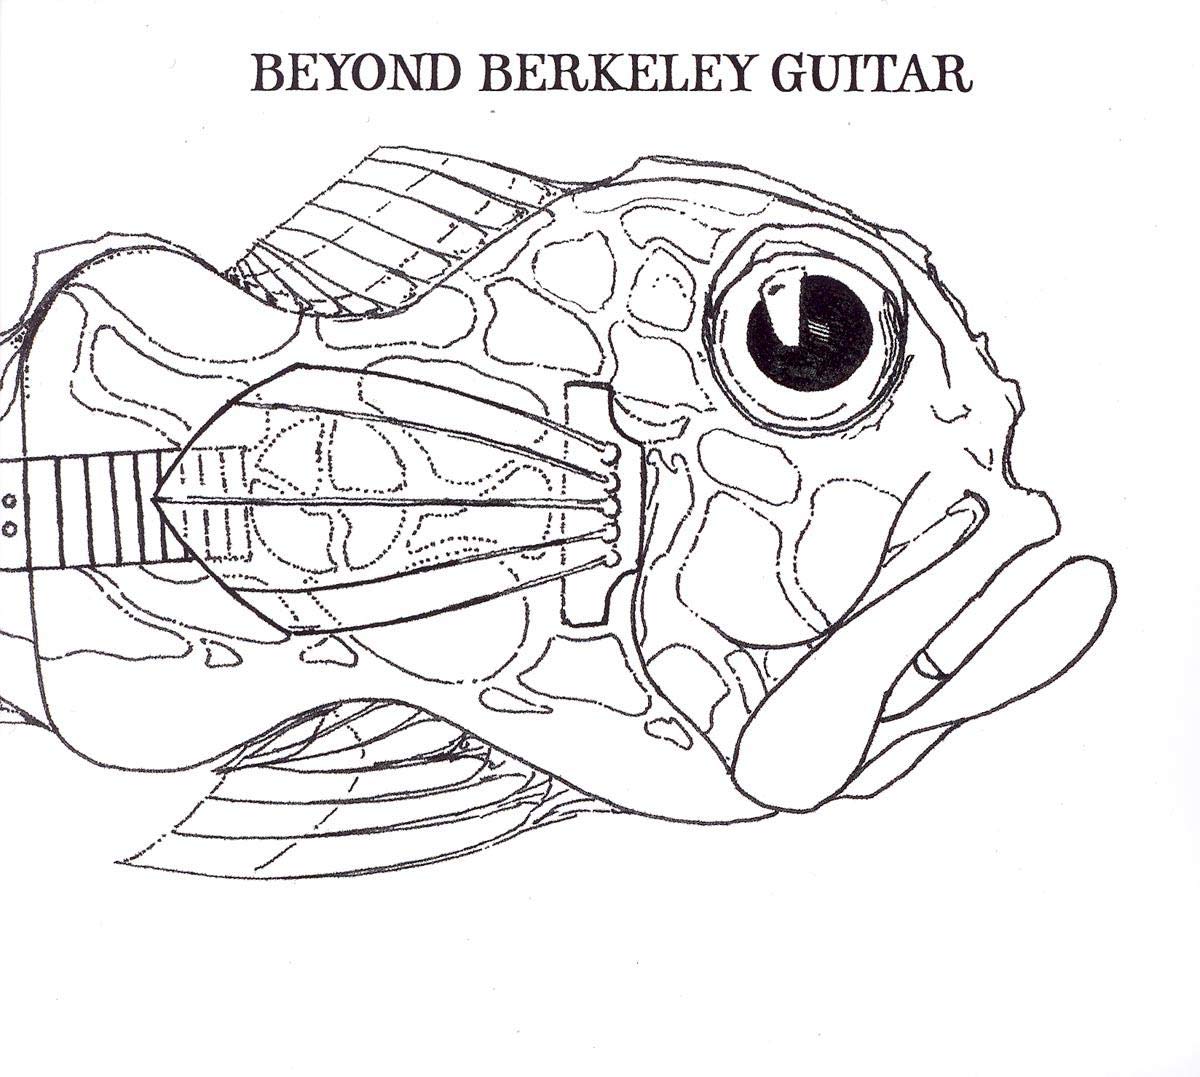 Beyond Berkeley Guitar / Various